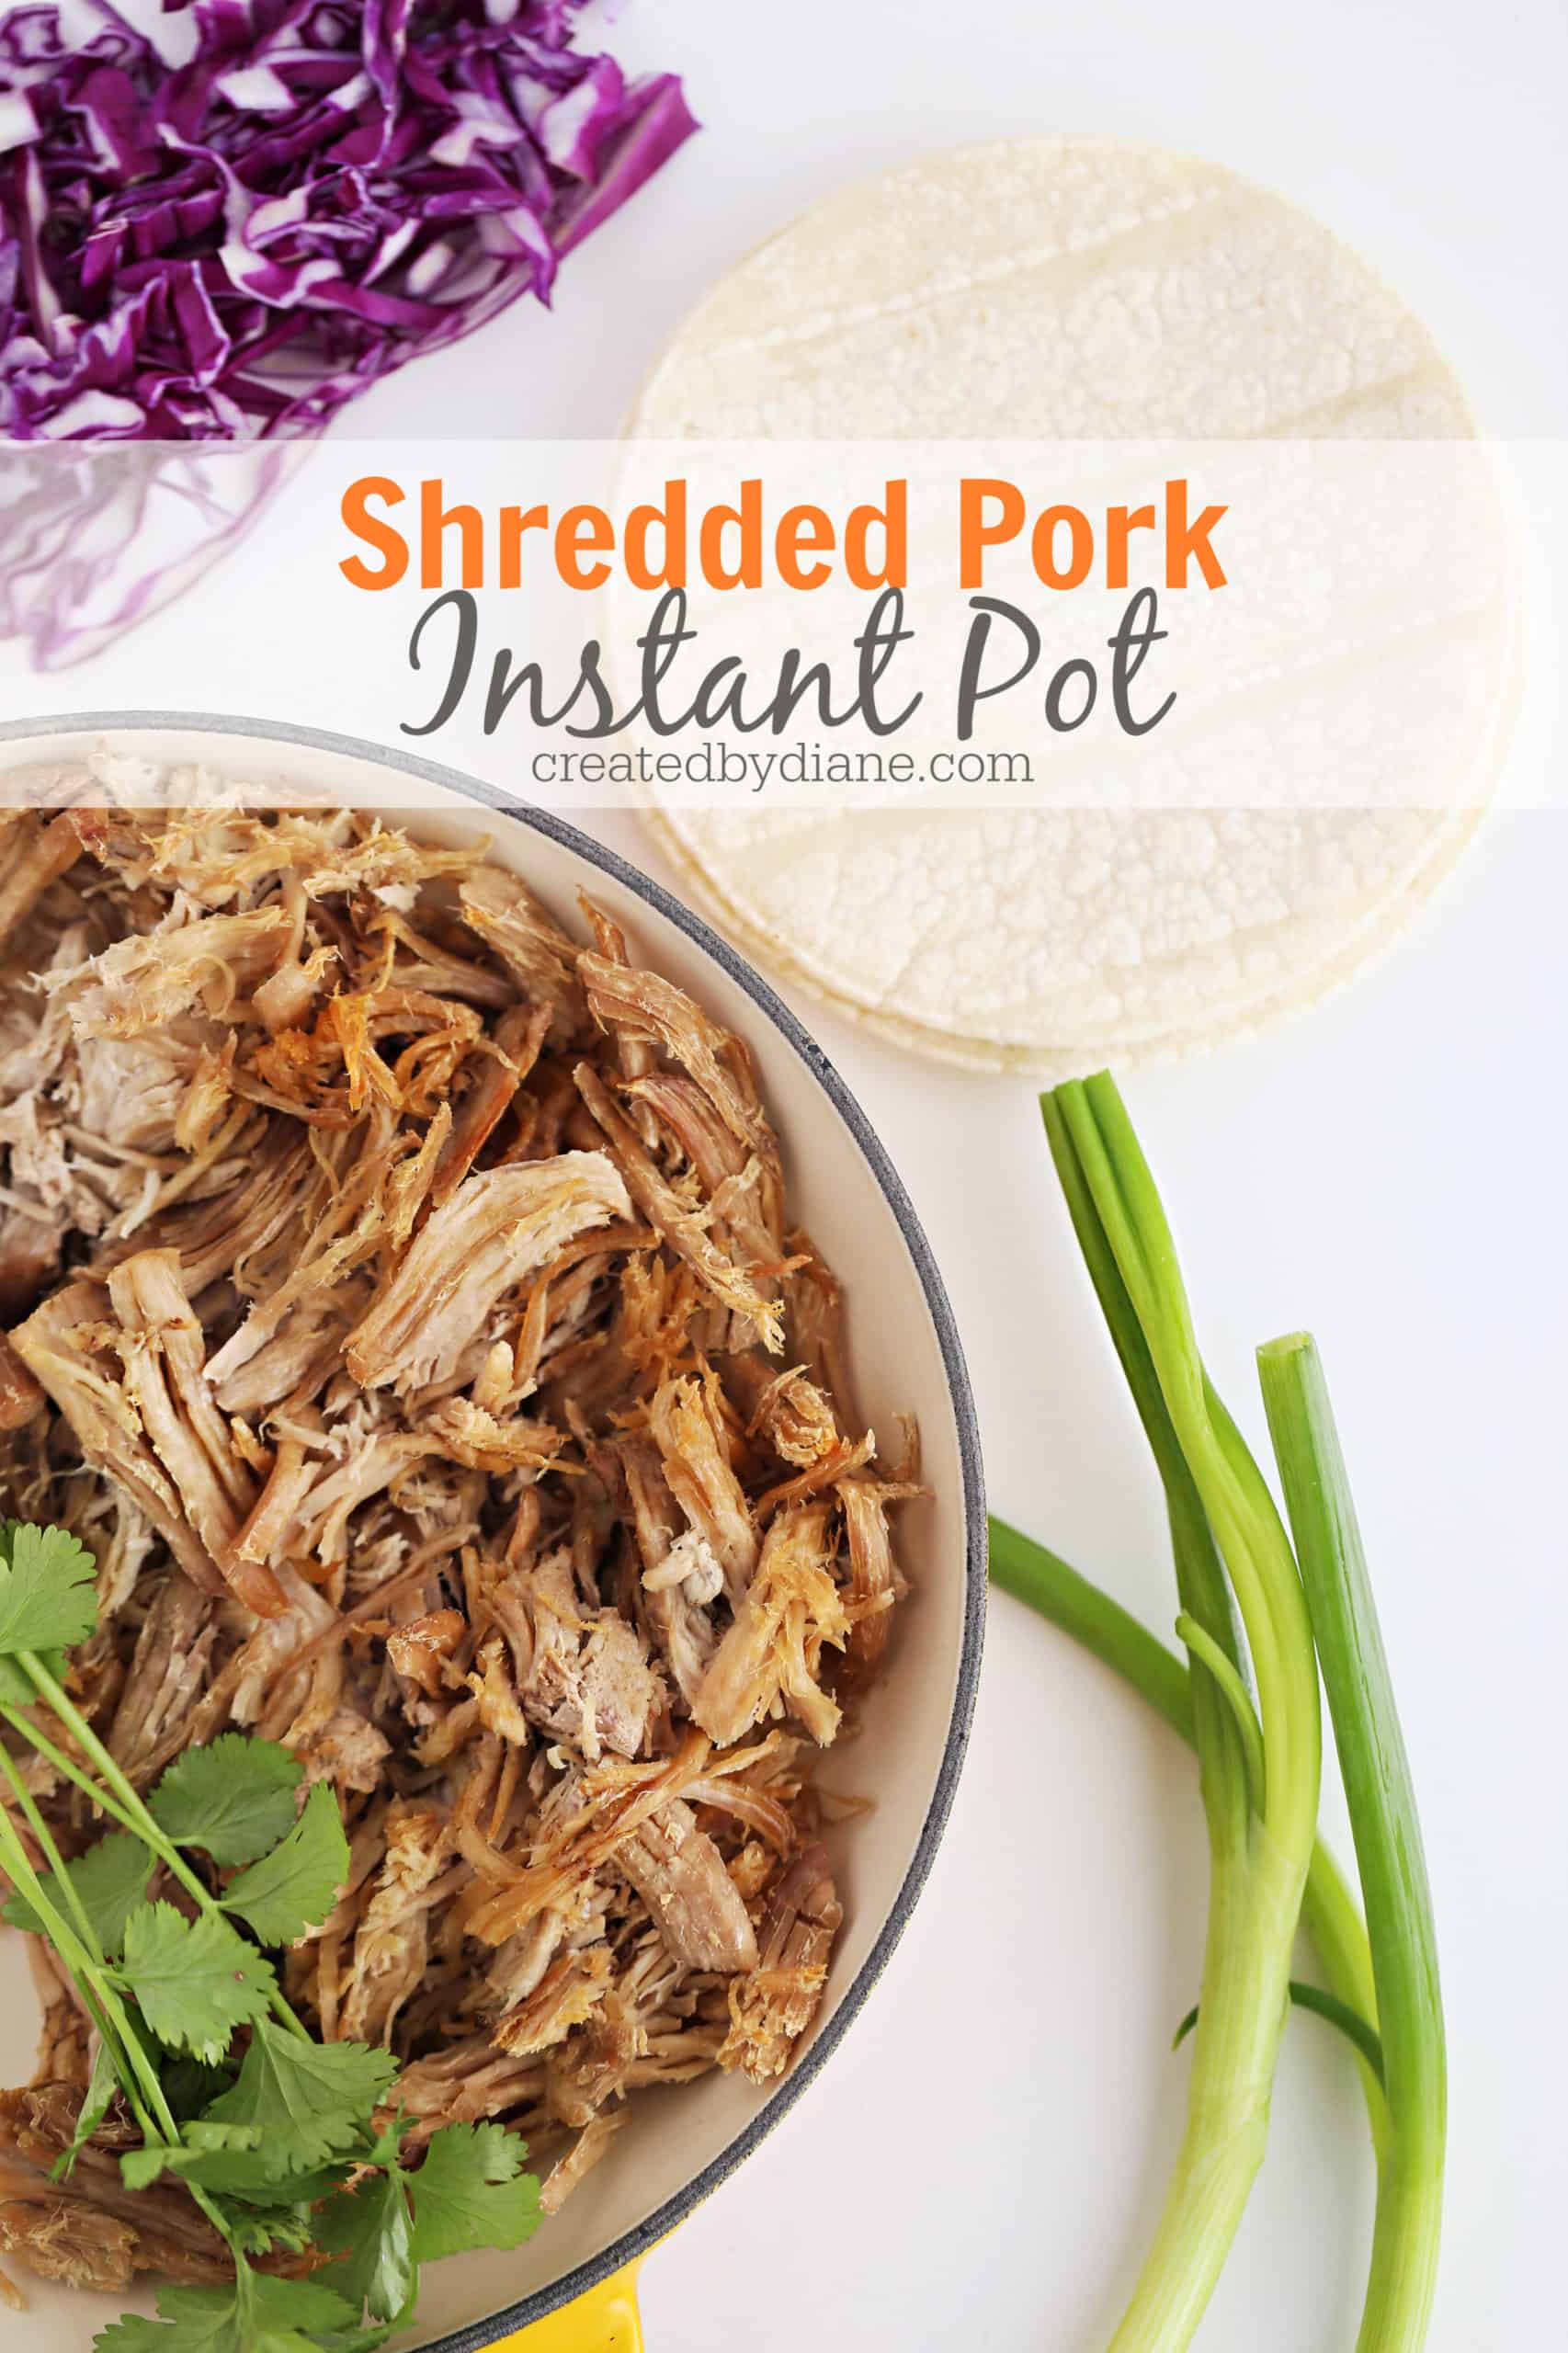 Instant Pot Shredded Pork